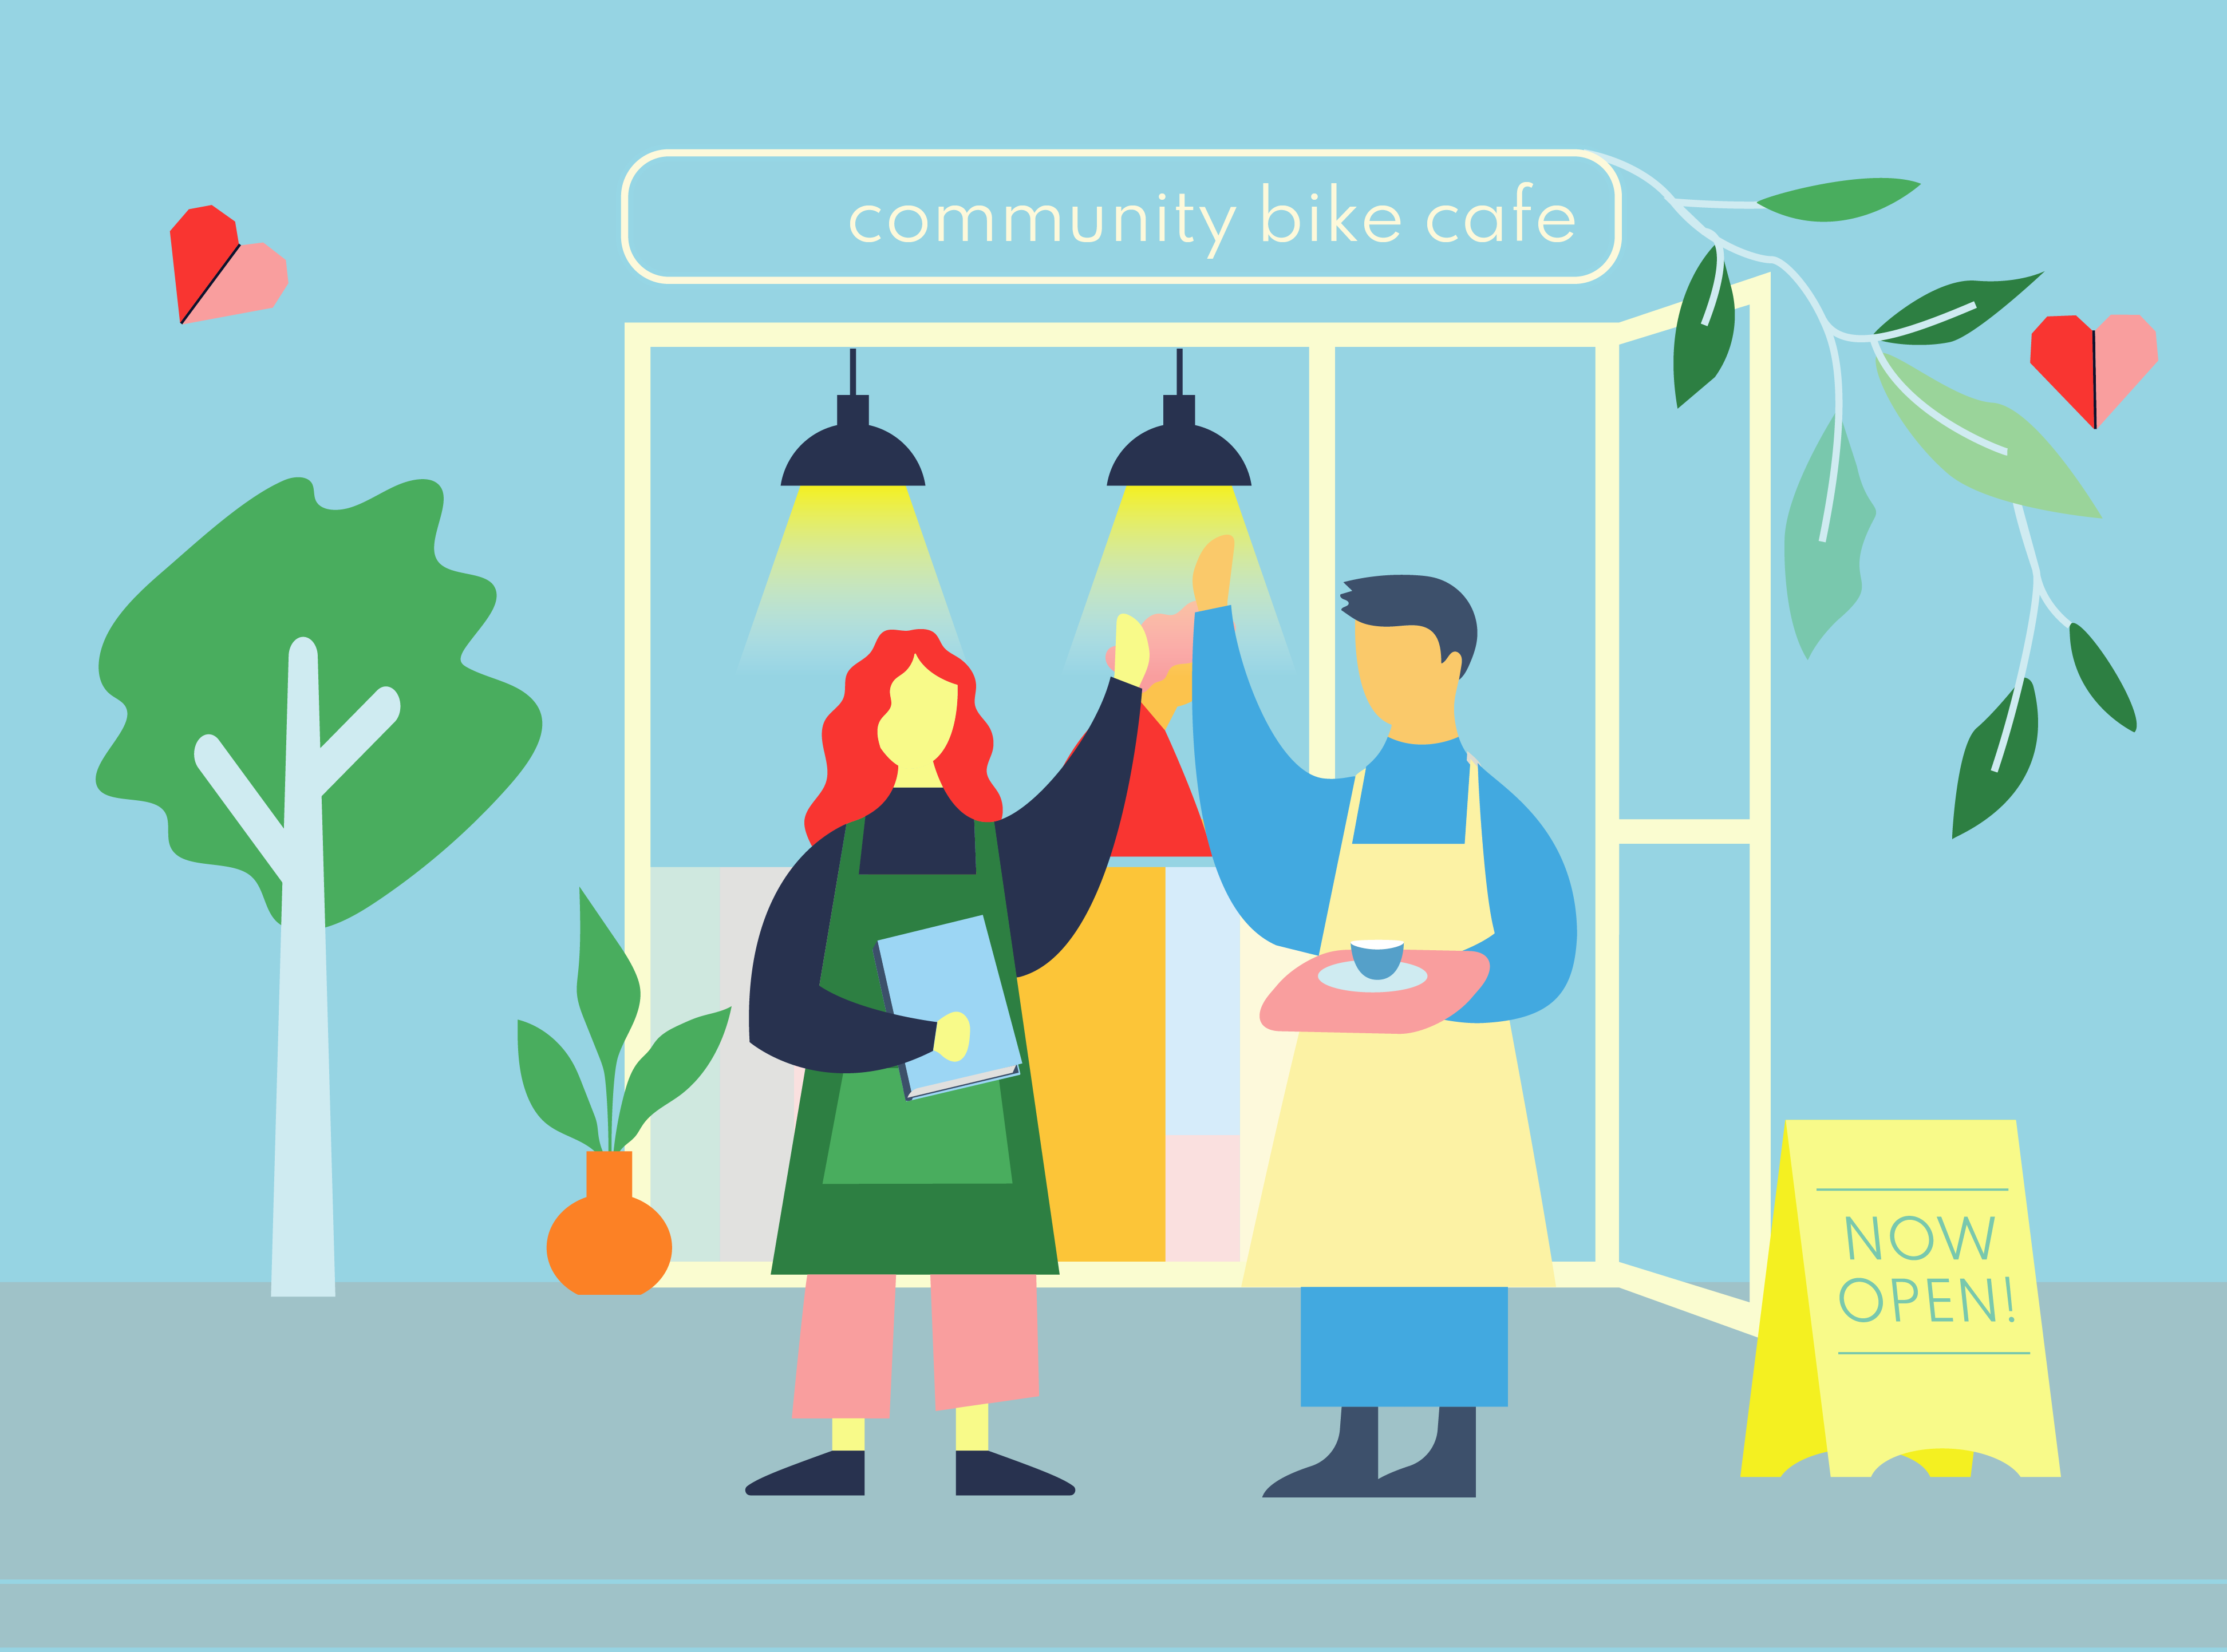 Community Bike Cafe scene